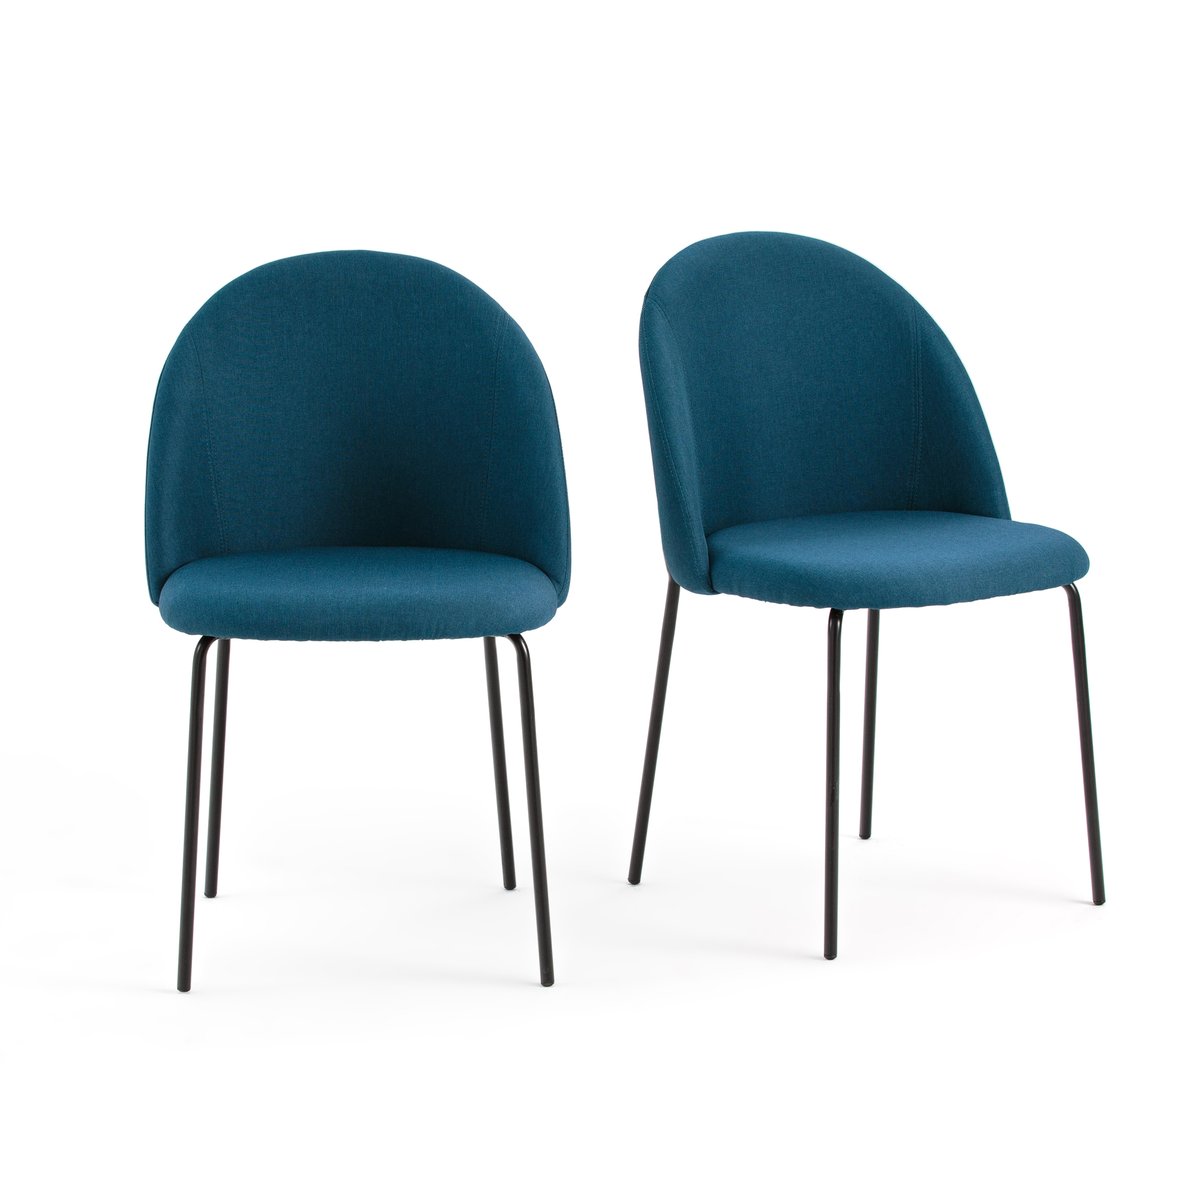 Комплект из 2 стульев NORDIE La Redoute единый размер синий комплект полубарных стульев симпл синий синий